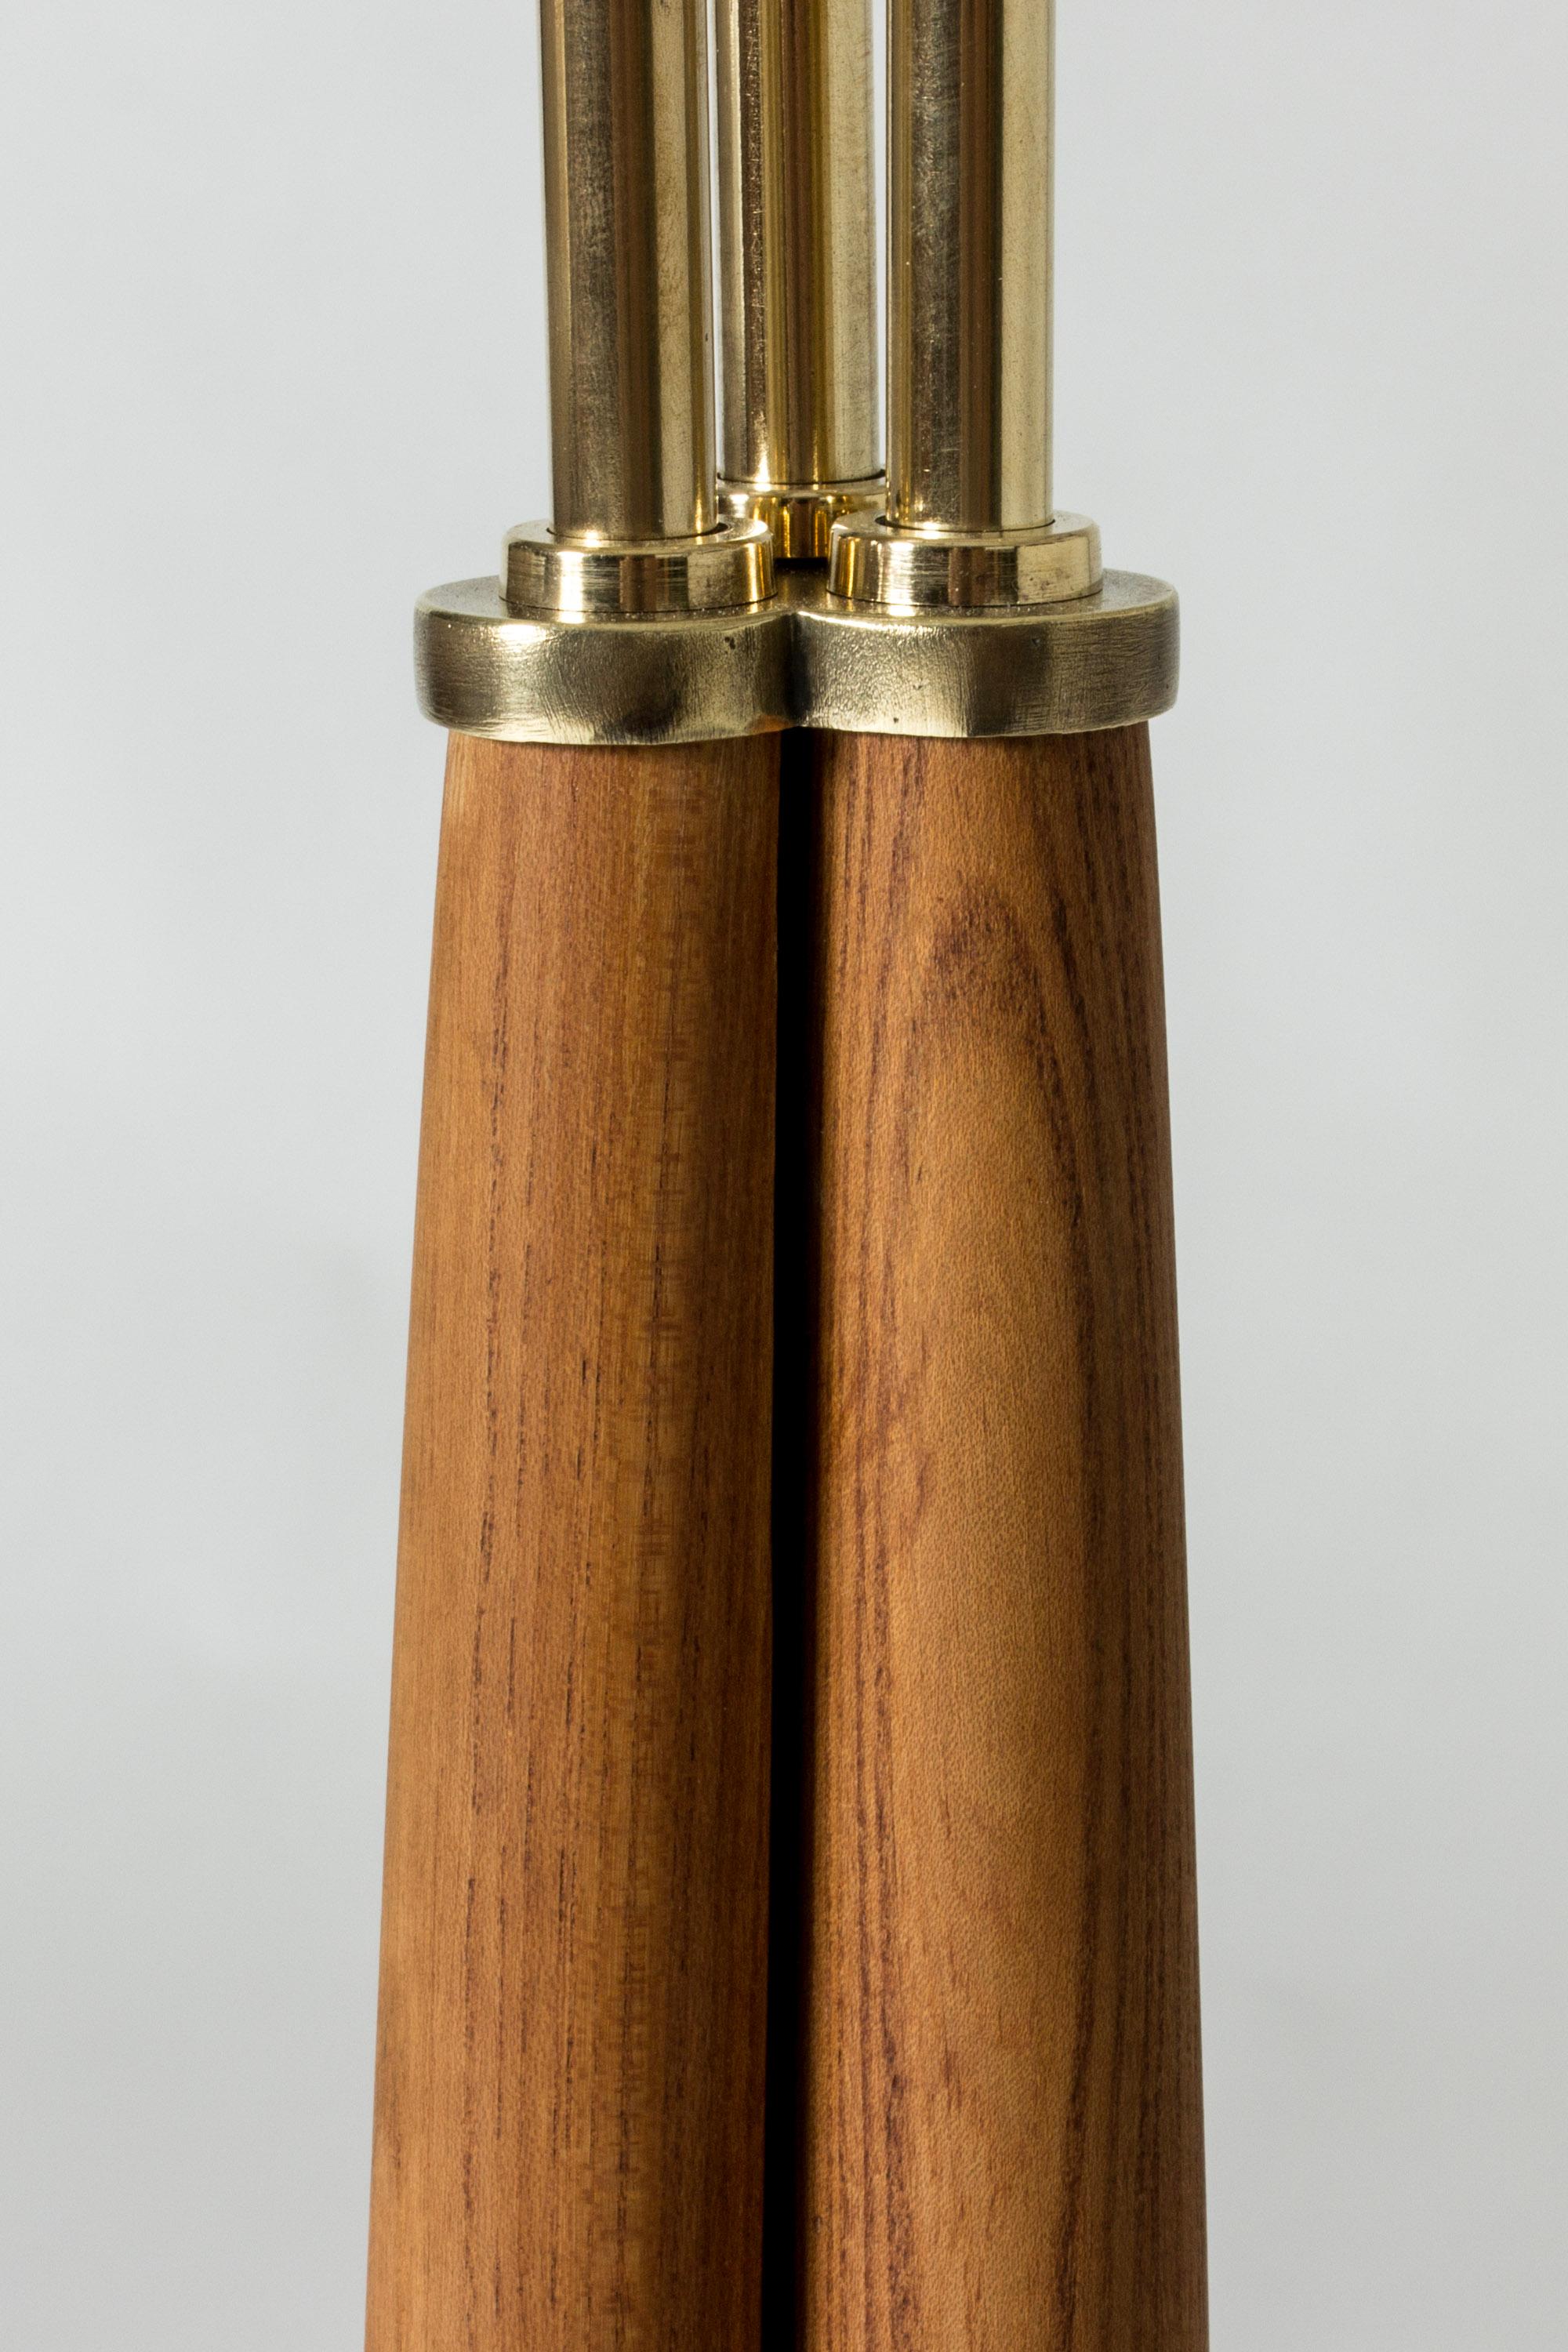 Scandinavian Midcentury Brass Floor Lamp, Sweden, 1940s For Sale 4